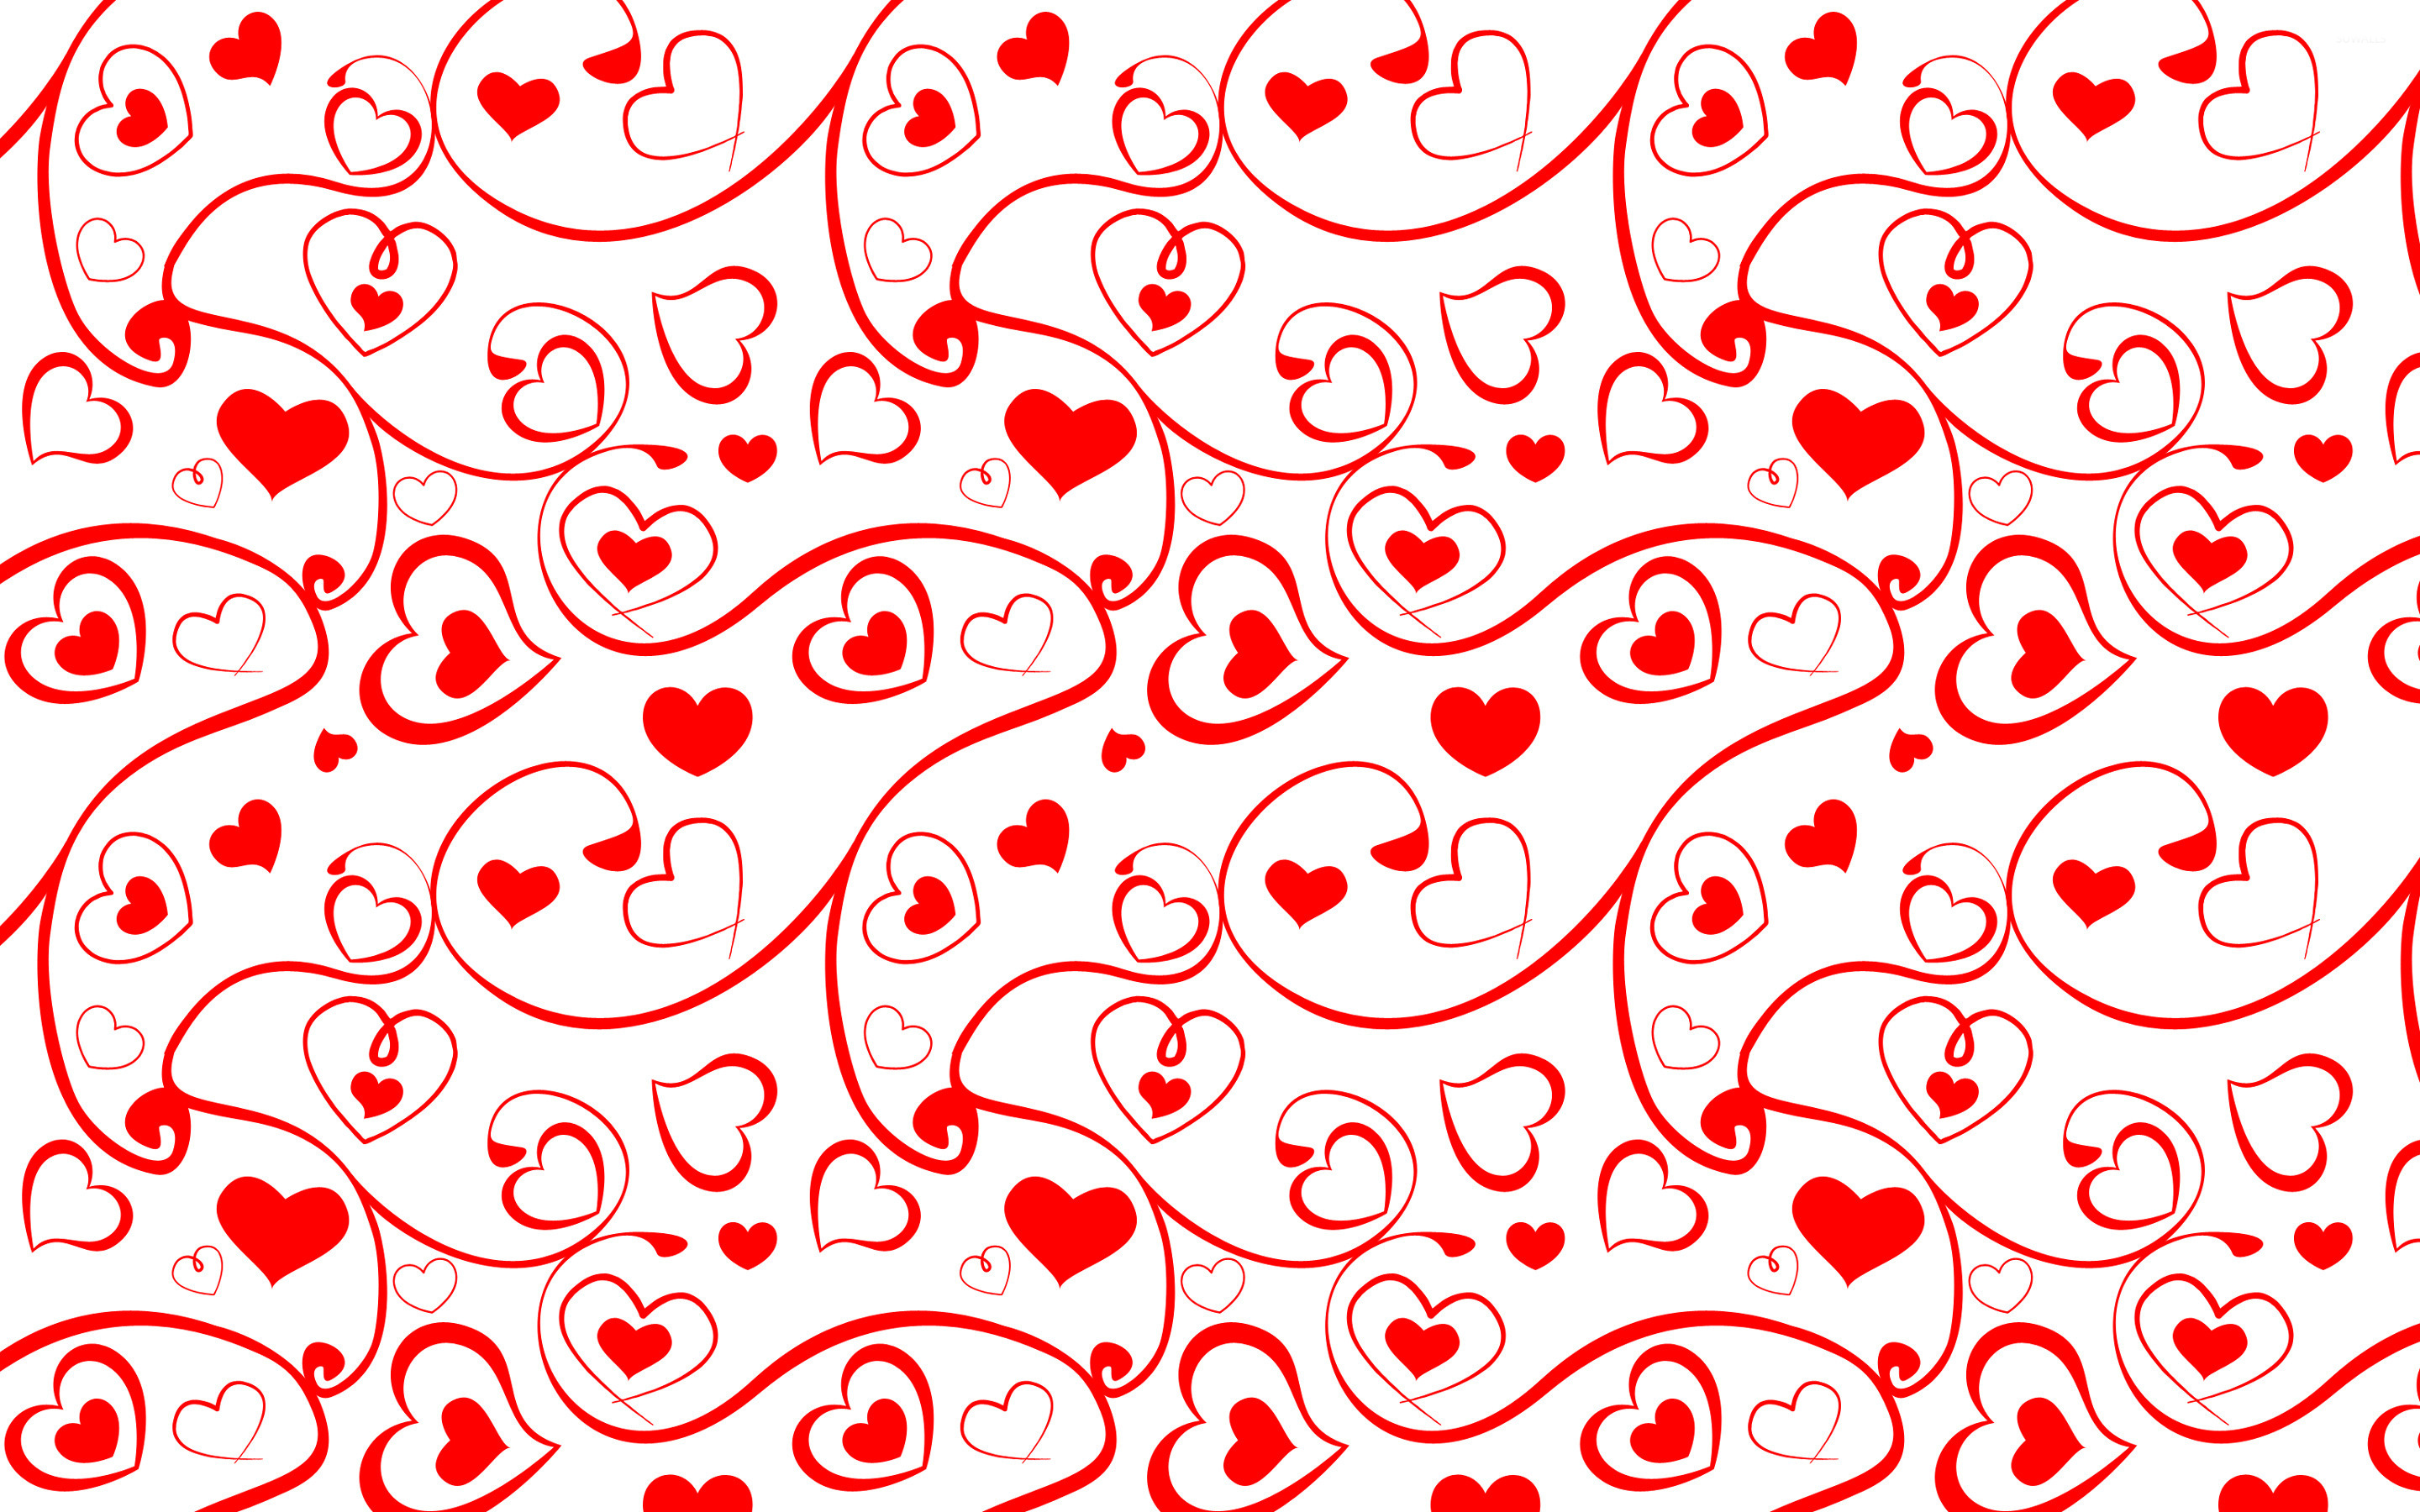 Heart Pattern Wallpapers